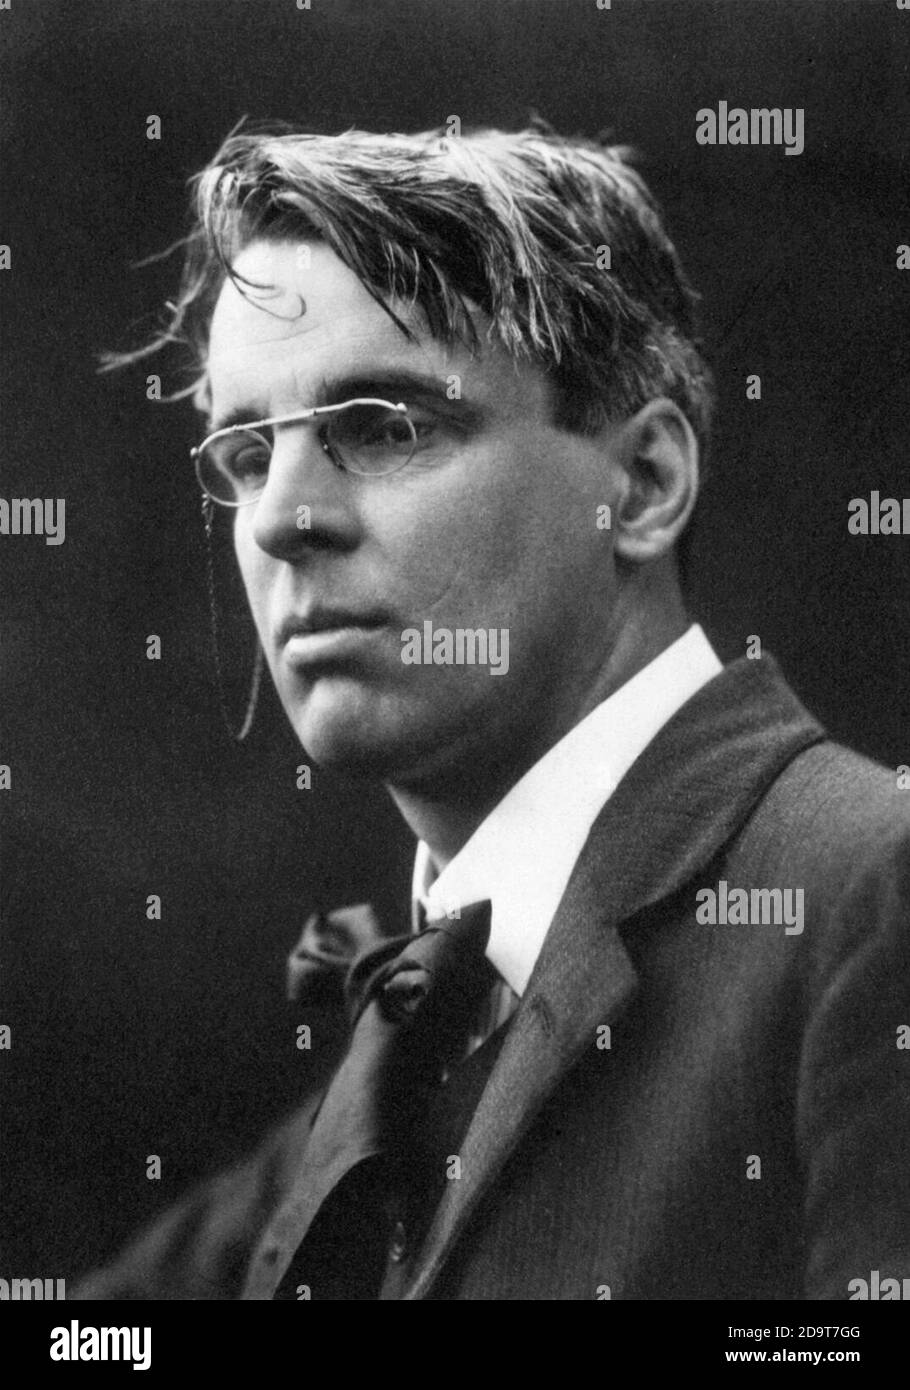 W B Yeats / WB Yeats. Portrait des irischen Dichters William Butler Yeats (1865-1939) von George Charles Beresford, 1911 Stockfoto